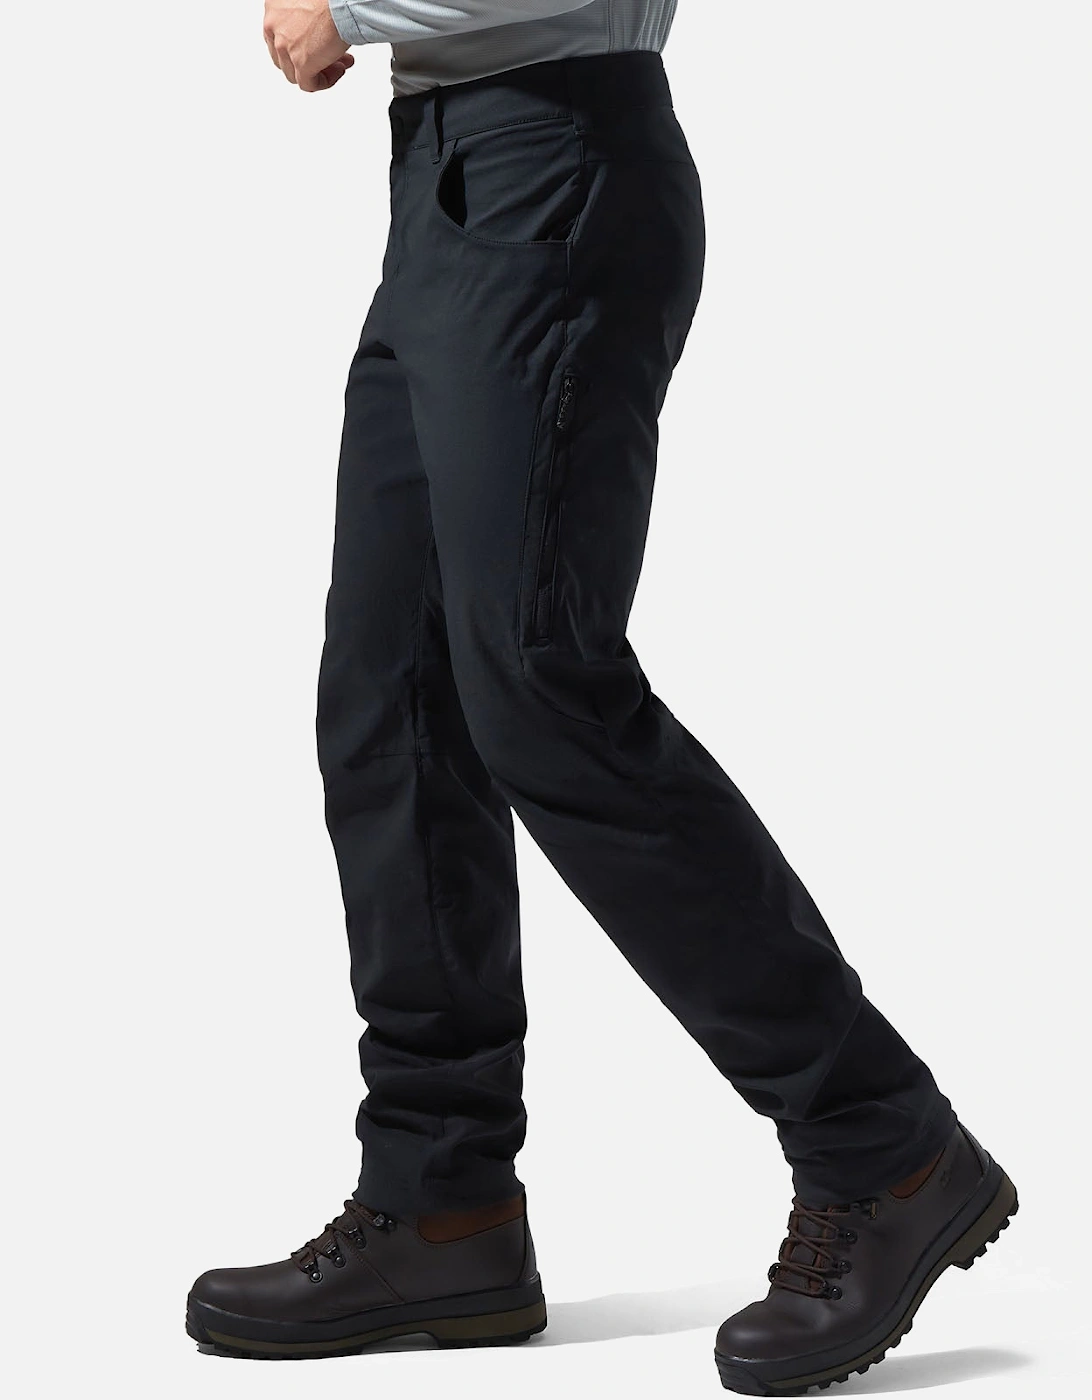 Mens Ortler 2.0 Water Resistant Walking Trousers - Black